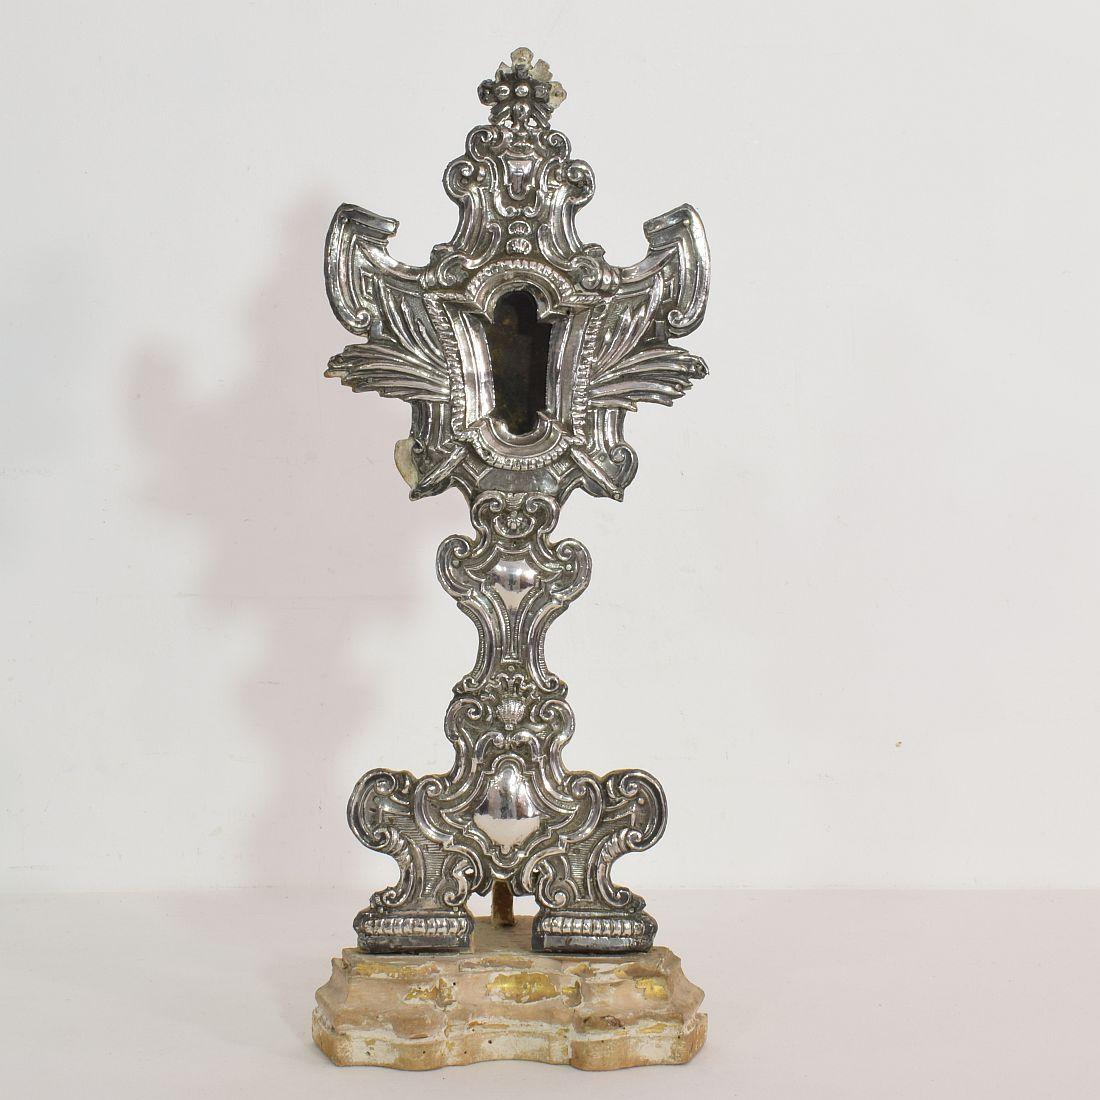 Schöner und detaillierter Reliquienhalter mit einer dünnen gehämmerten Silberschicht auf Holz. Schöne Details,
Spanien, um 1750. Verwittert und kleine Verluste.